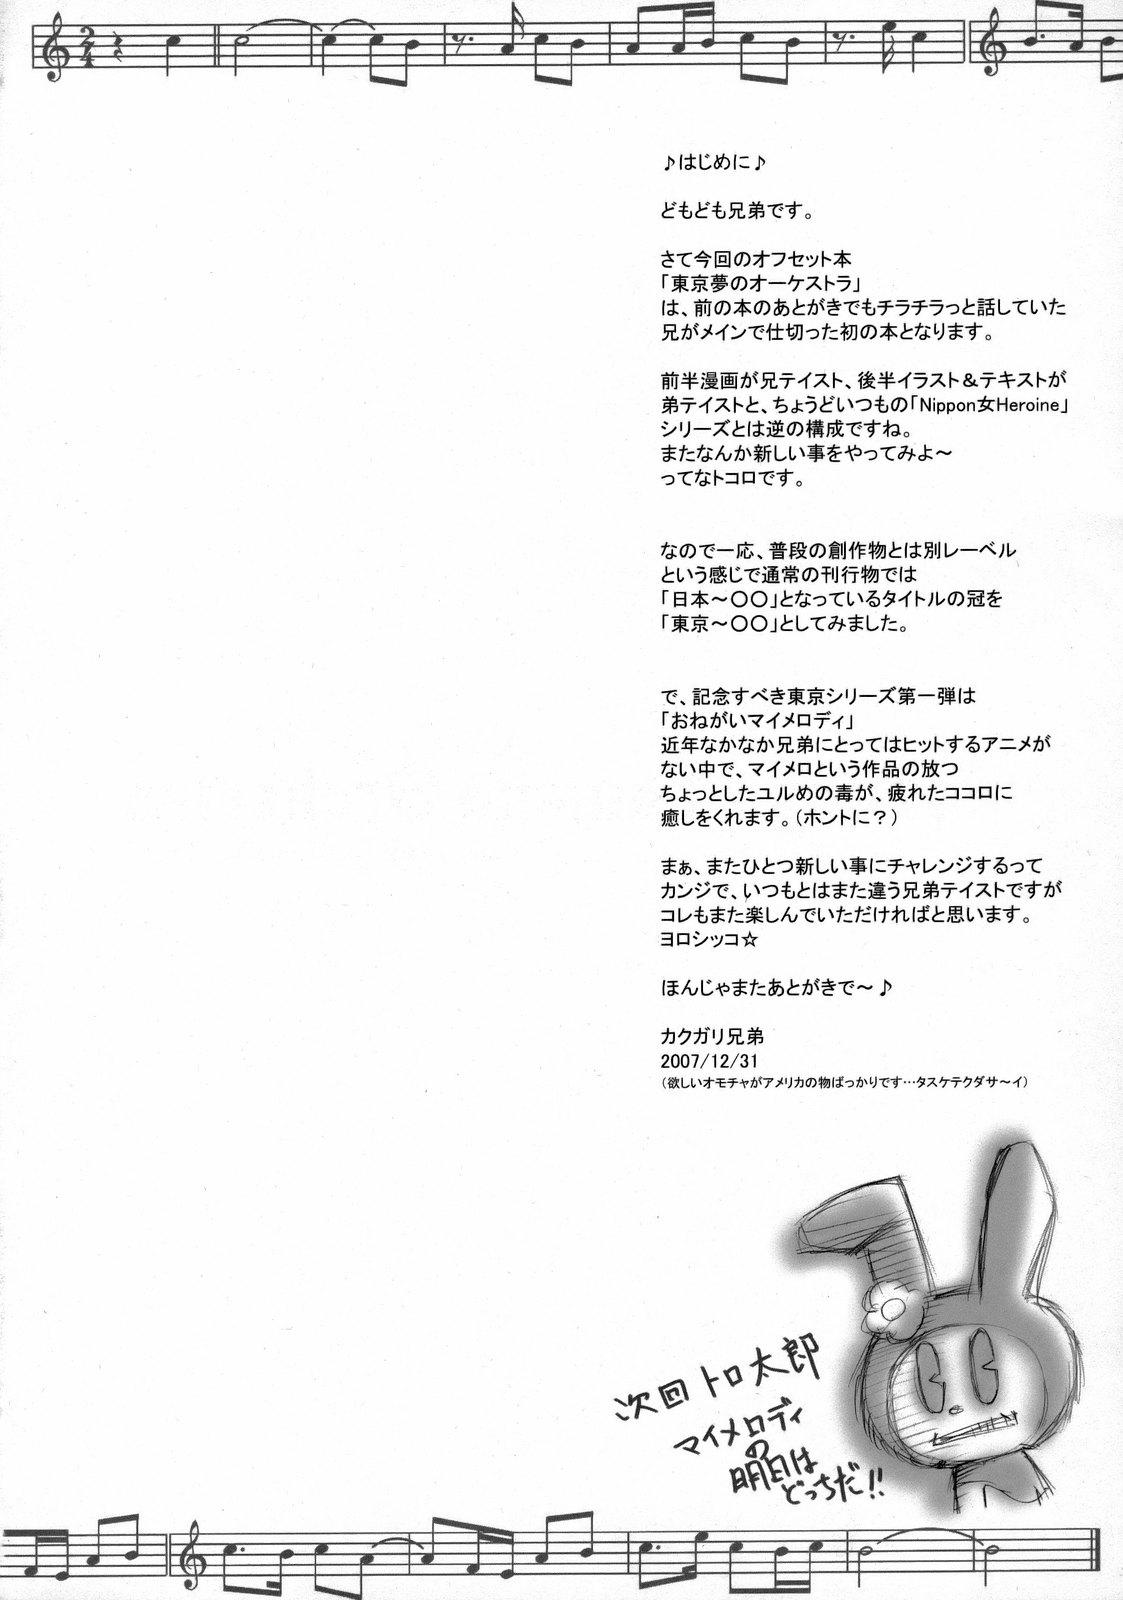 Sloppy Blow Job Tokyo Yumeno Orchestra - Onegai my melody Hindi - Page 3